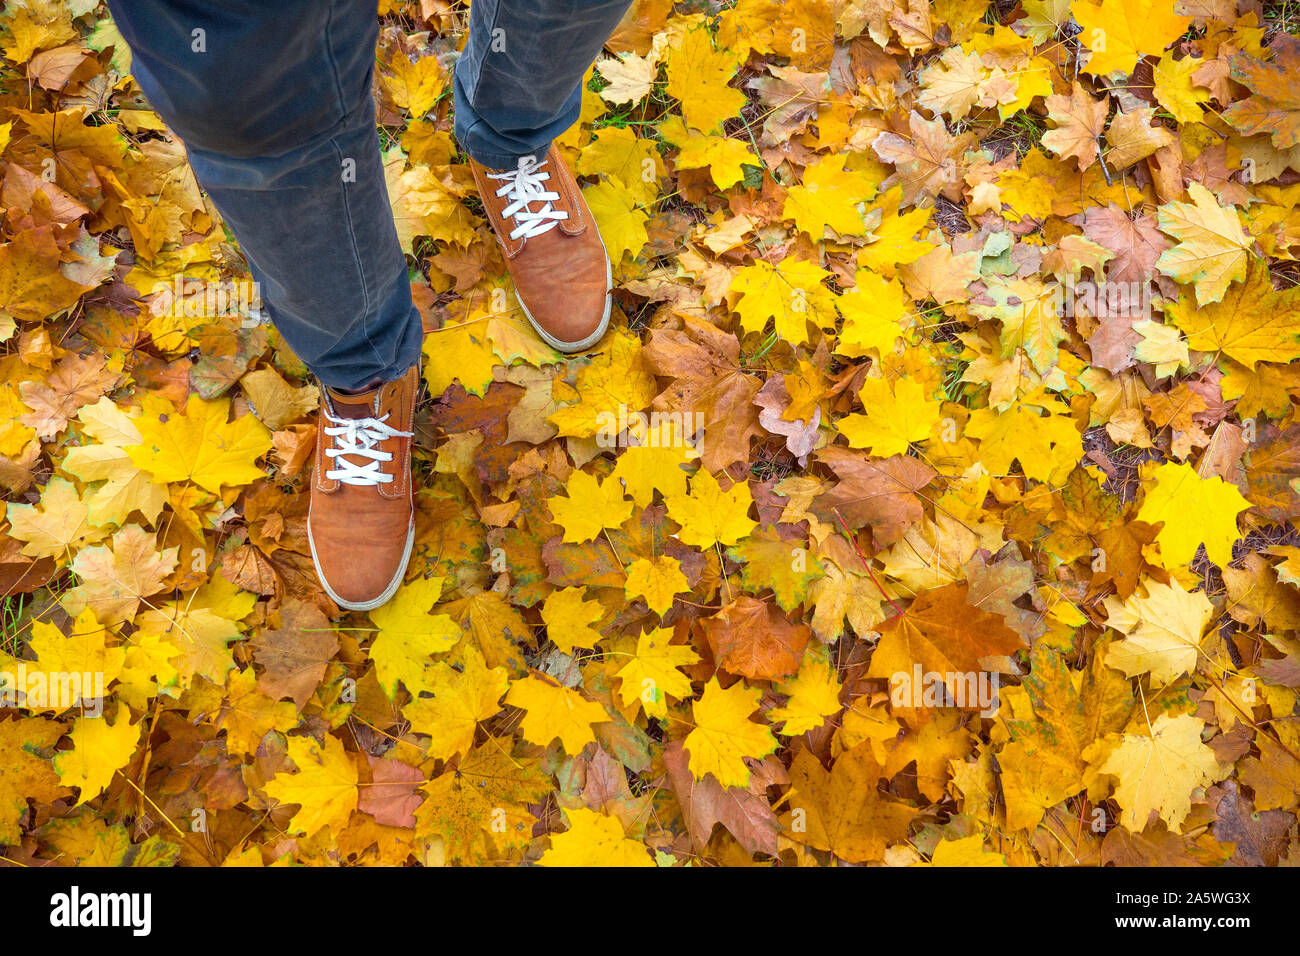 Arrière-plan de l'automne, les feuilles, les pieds et les chaussures. Image conceptuelle de pieds de sneakers jaune sur les feuilles d'automne. Des chaussures pour des promenades dans la nature. Pieds chaussures de marche sur les feuilles d'automne. Style de vie La mode à la mode Banque D'Images